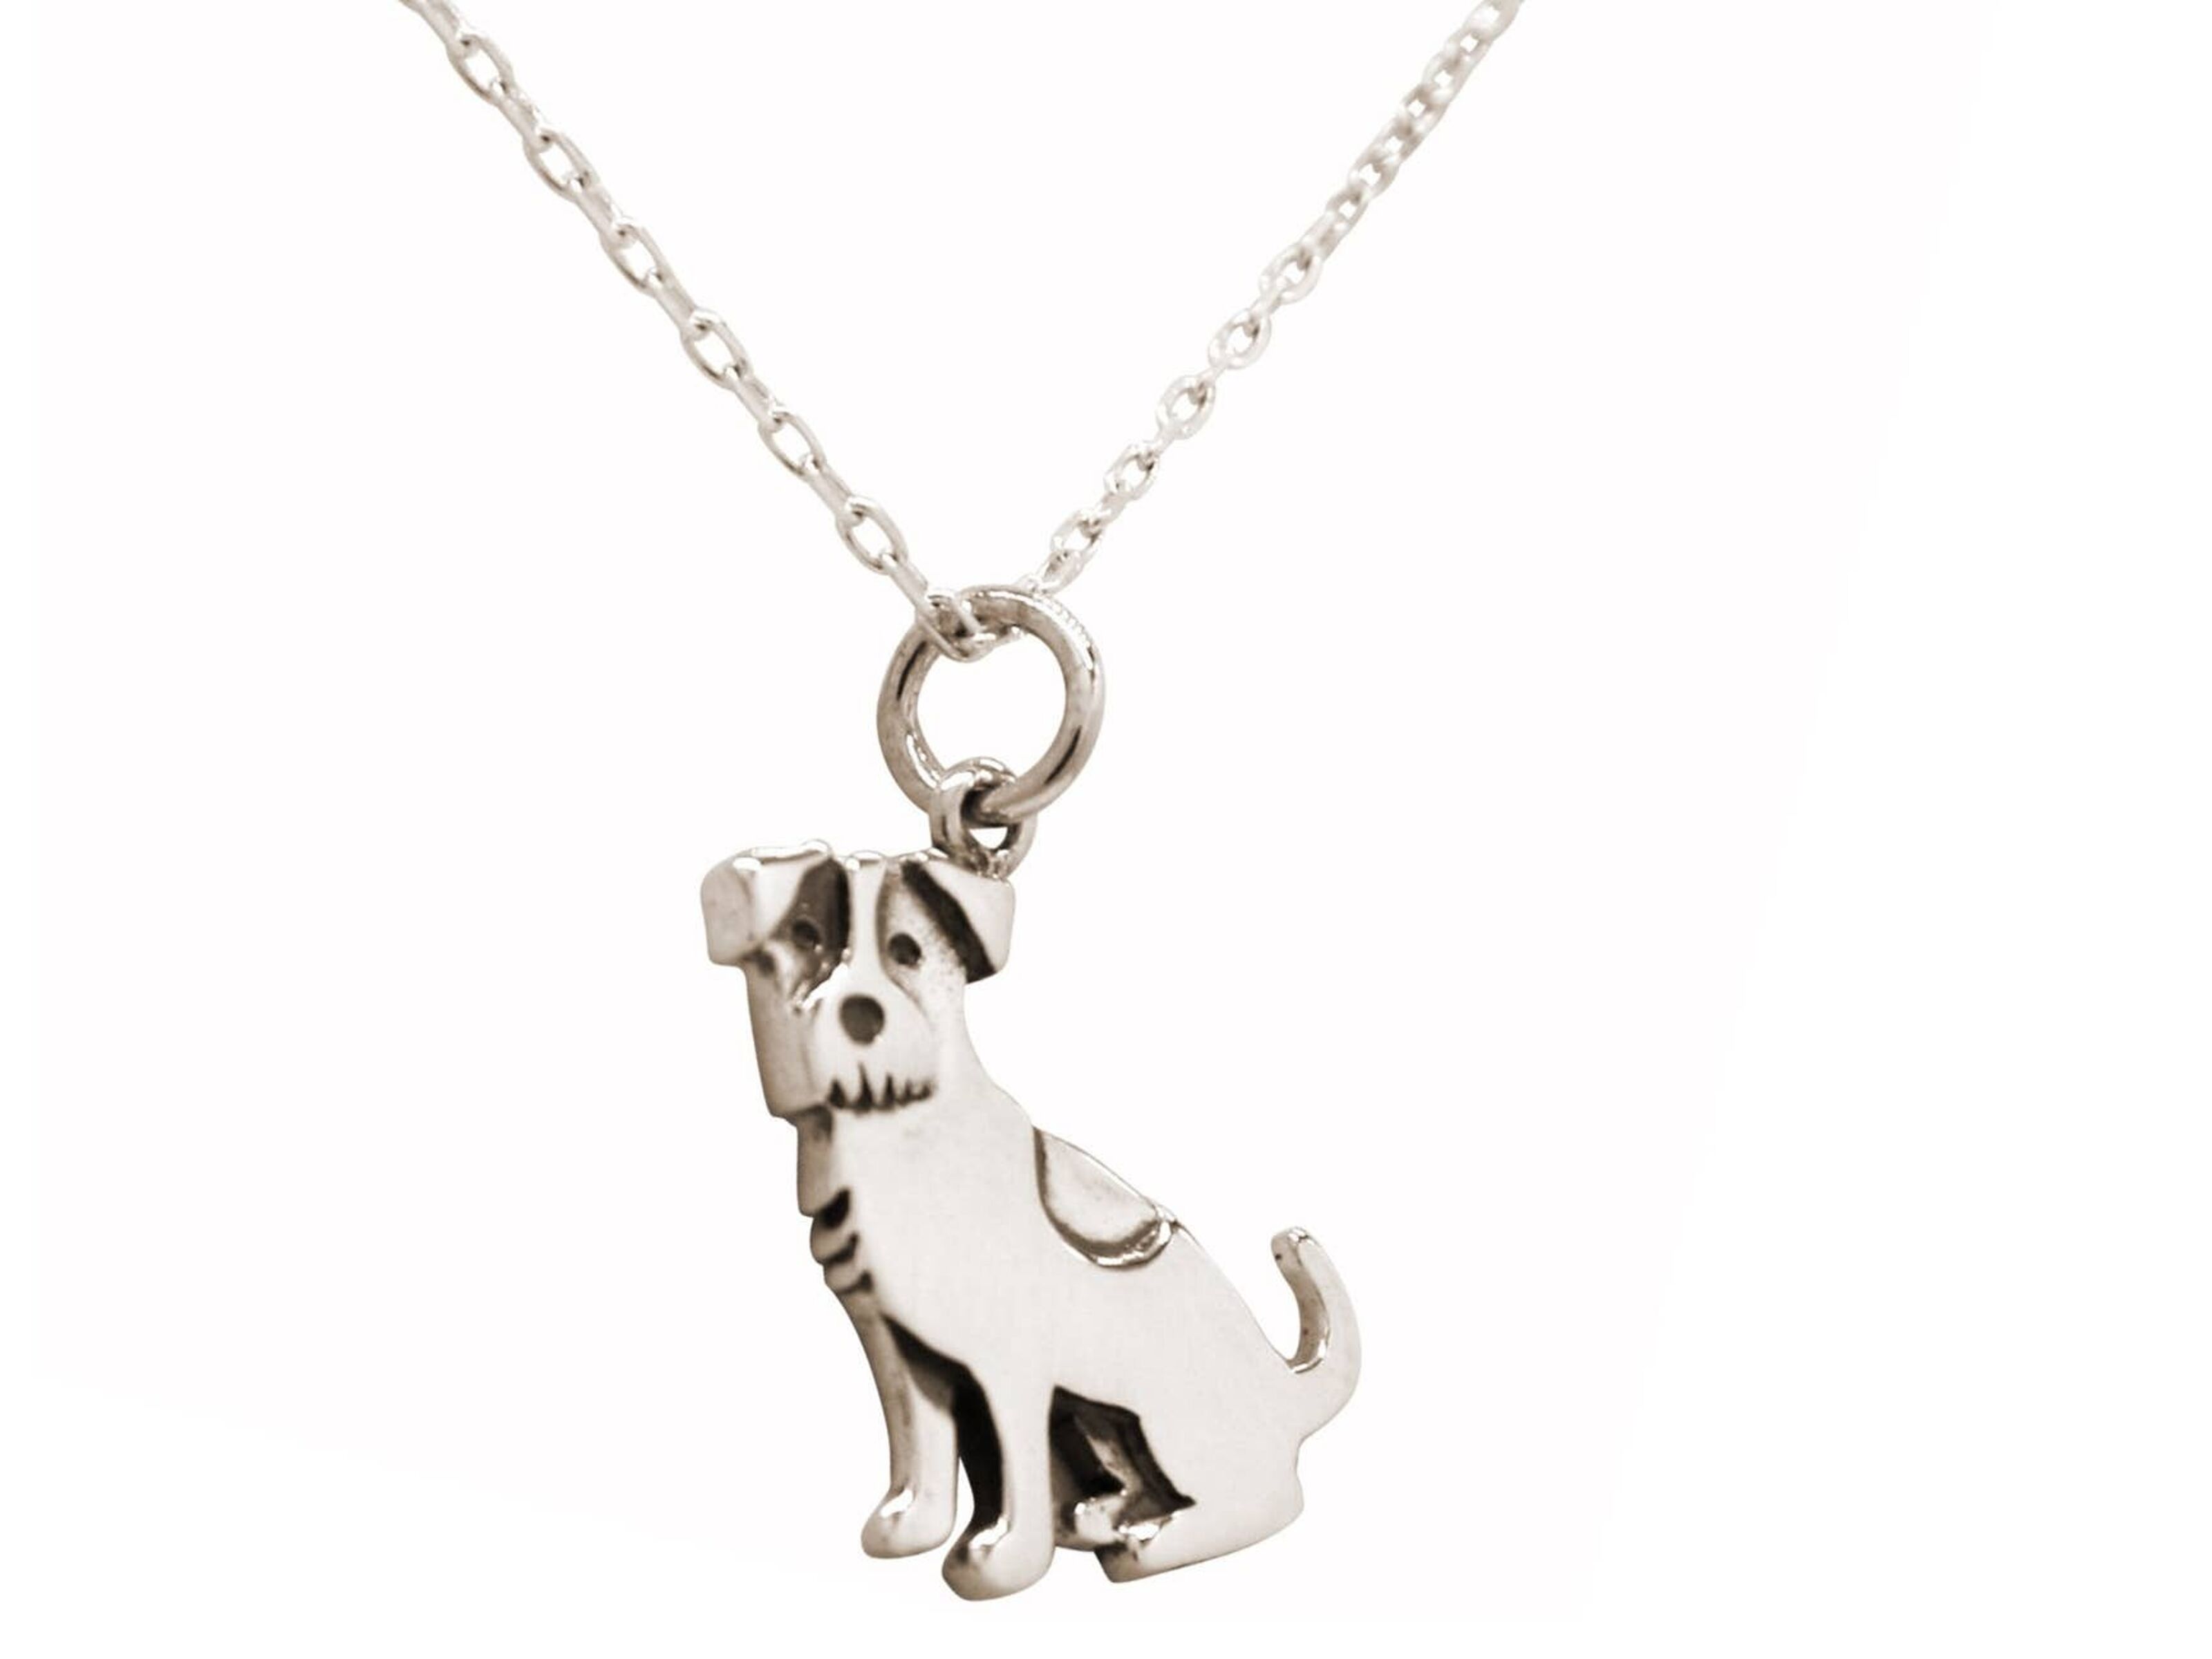 Gemshine Halskette Französische Bulldogge Hund mit Saphir Anhänger in 925  Silber, vergoldet oder rose. Geschenk für Haustier Herrchen, Frauchen –  Made in Spain